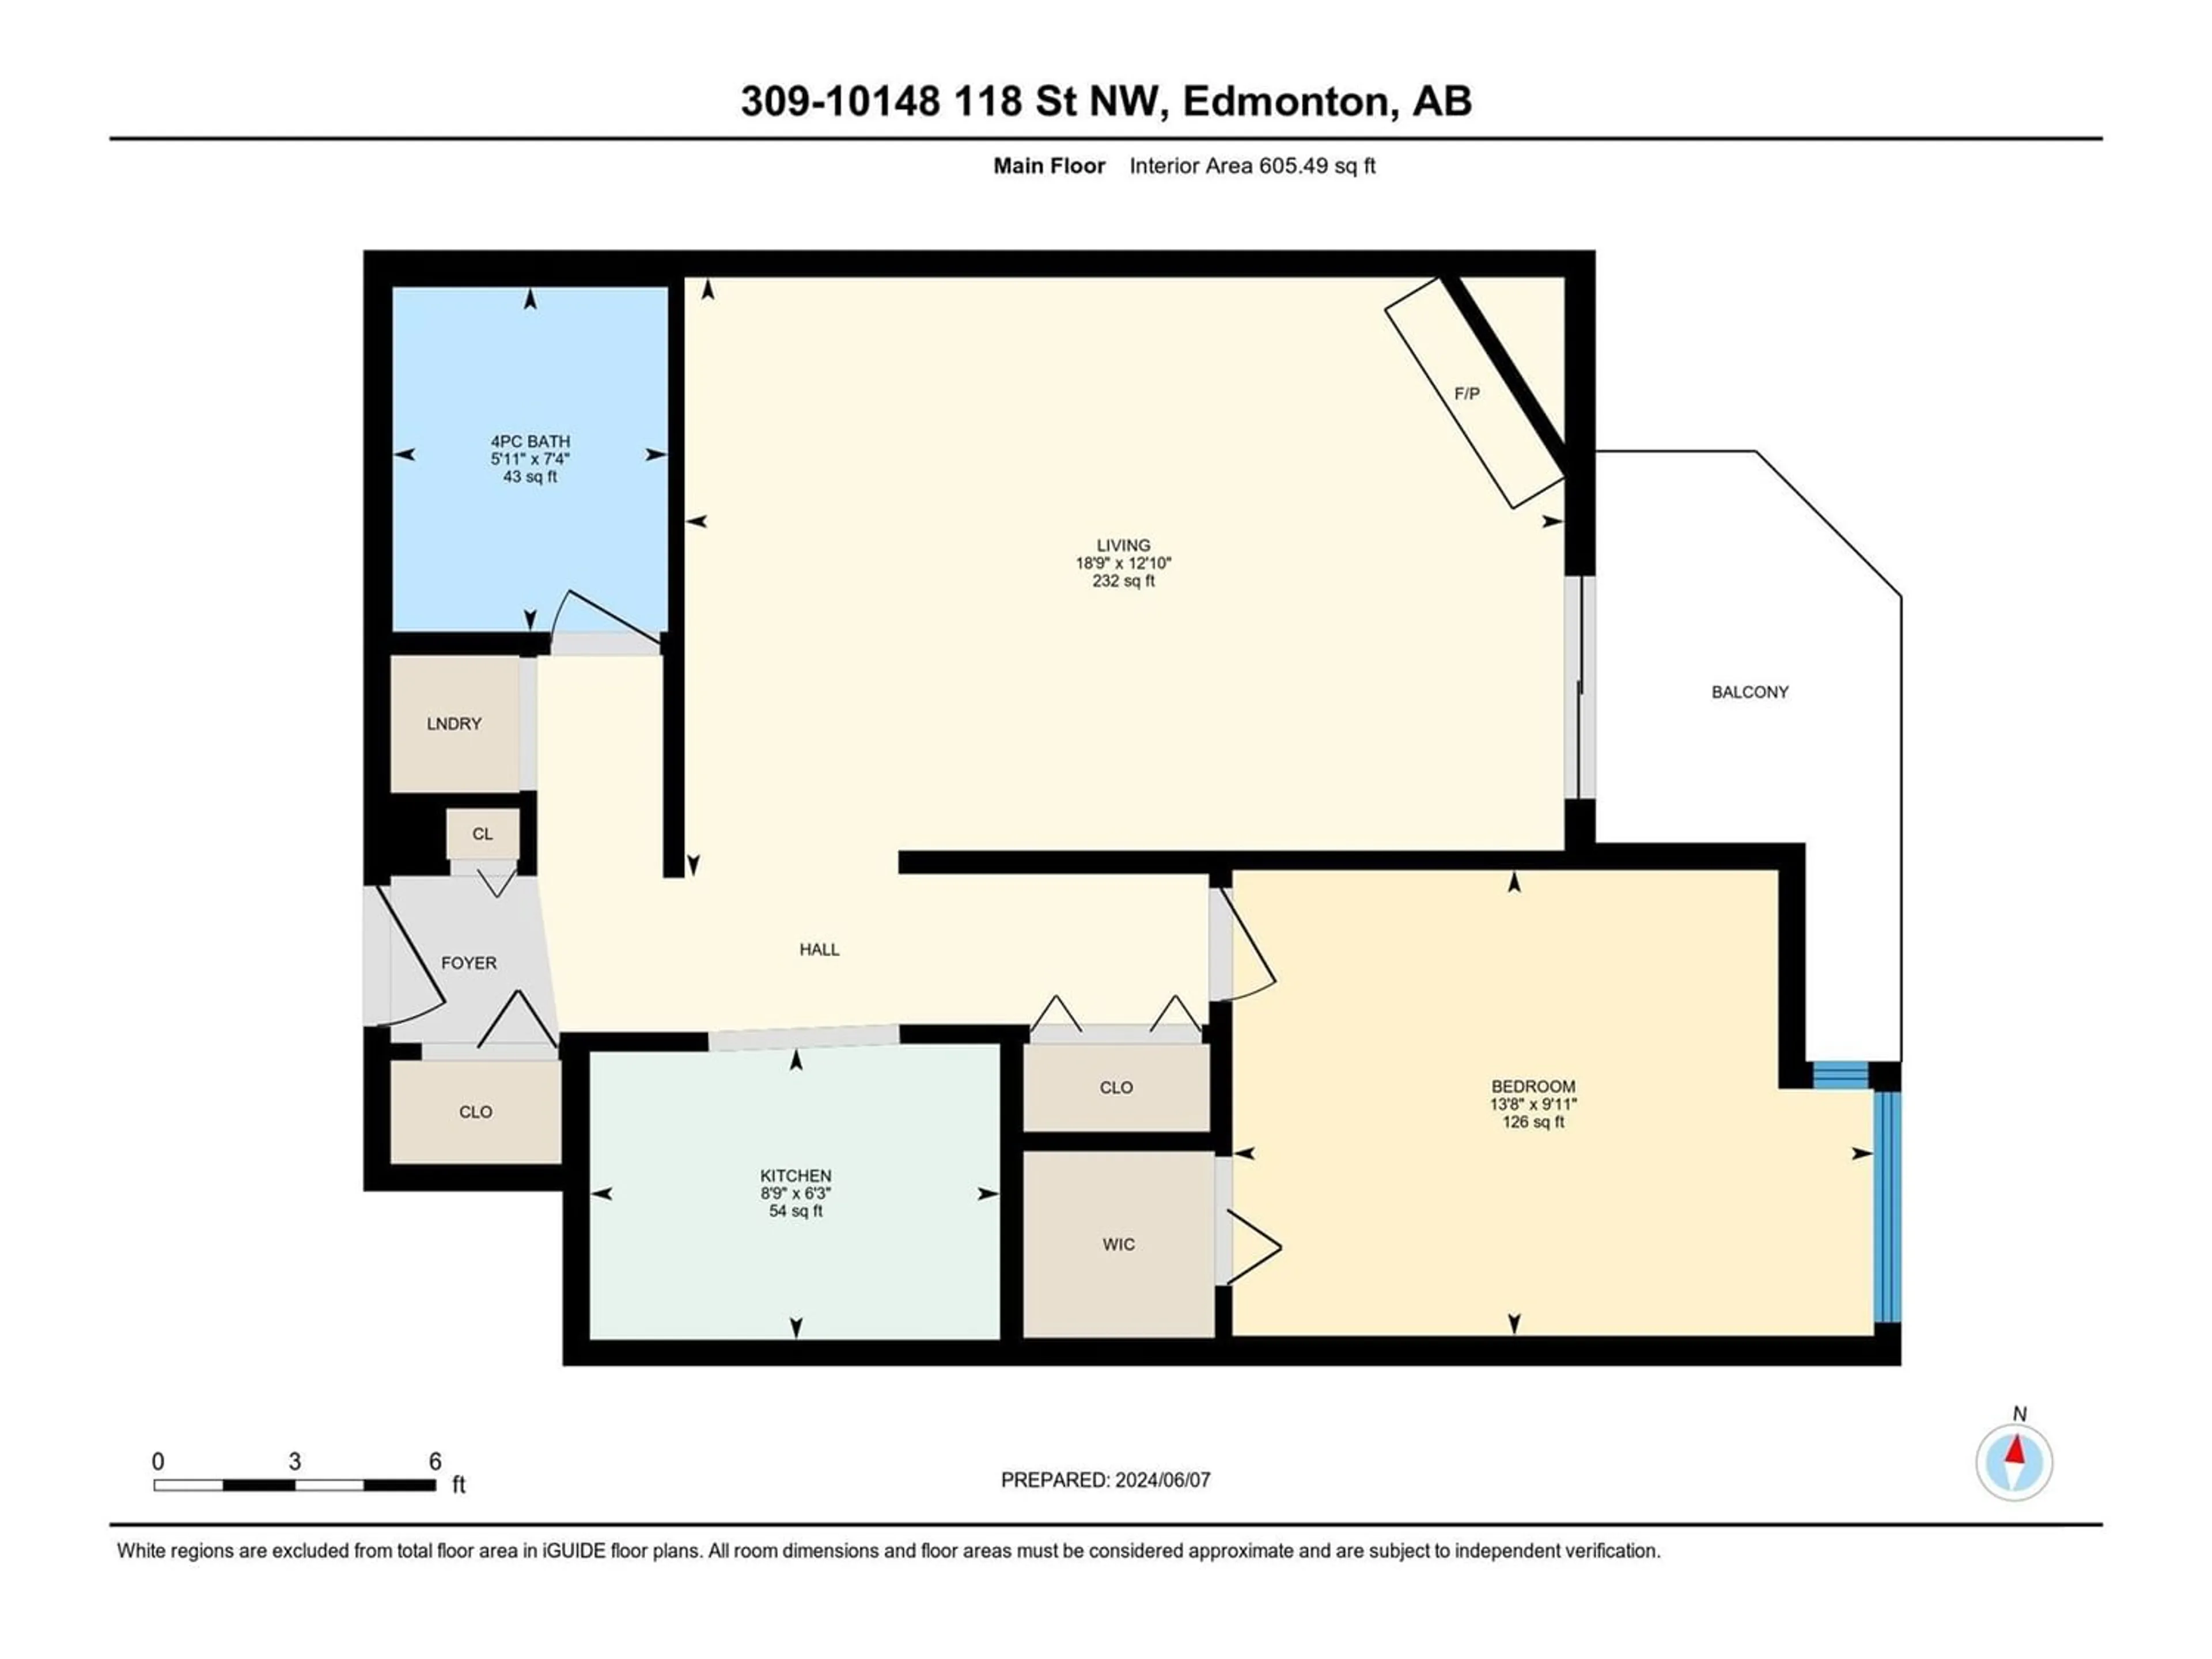 Floor plan for #309 10148 118 ST NW, Edmonton Alberta T5K1Y4